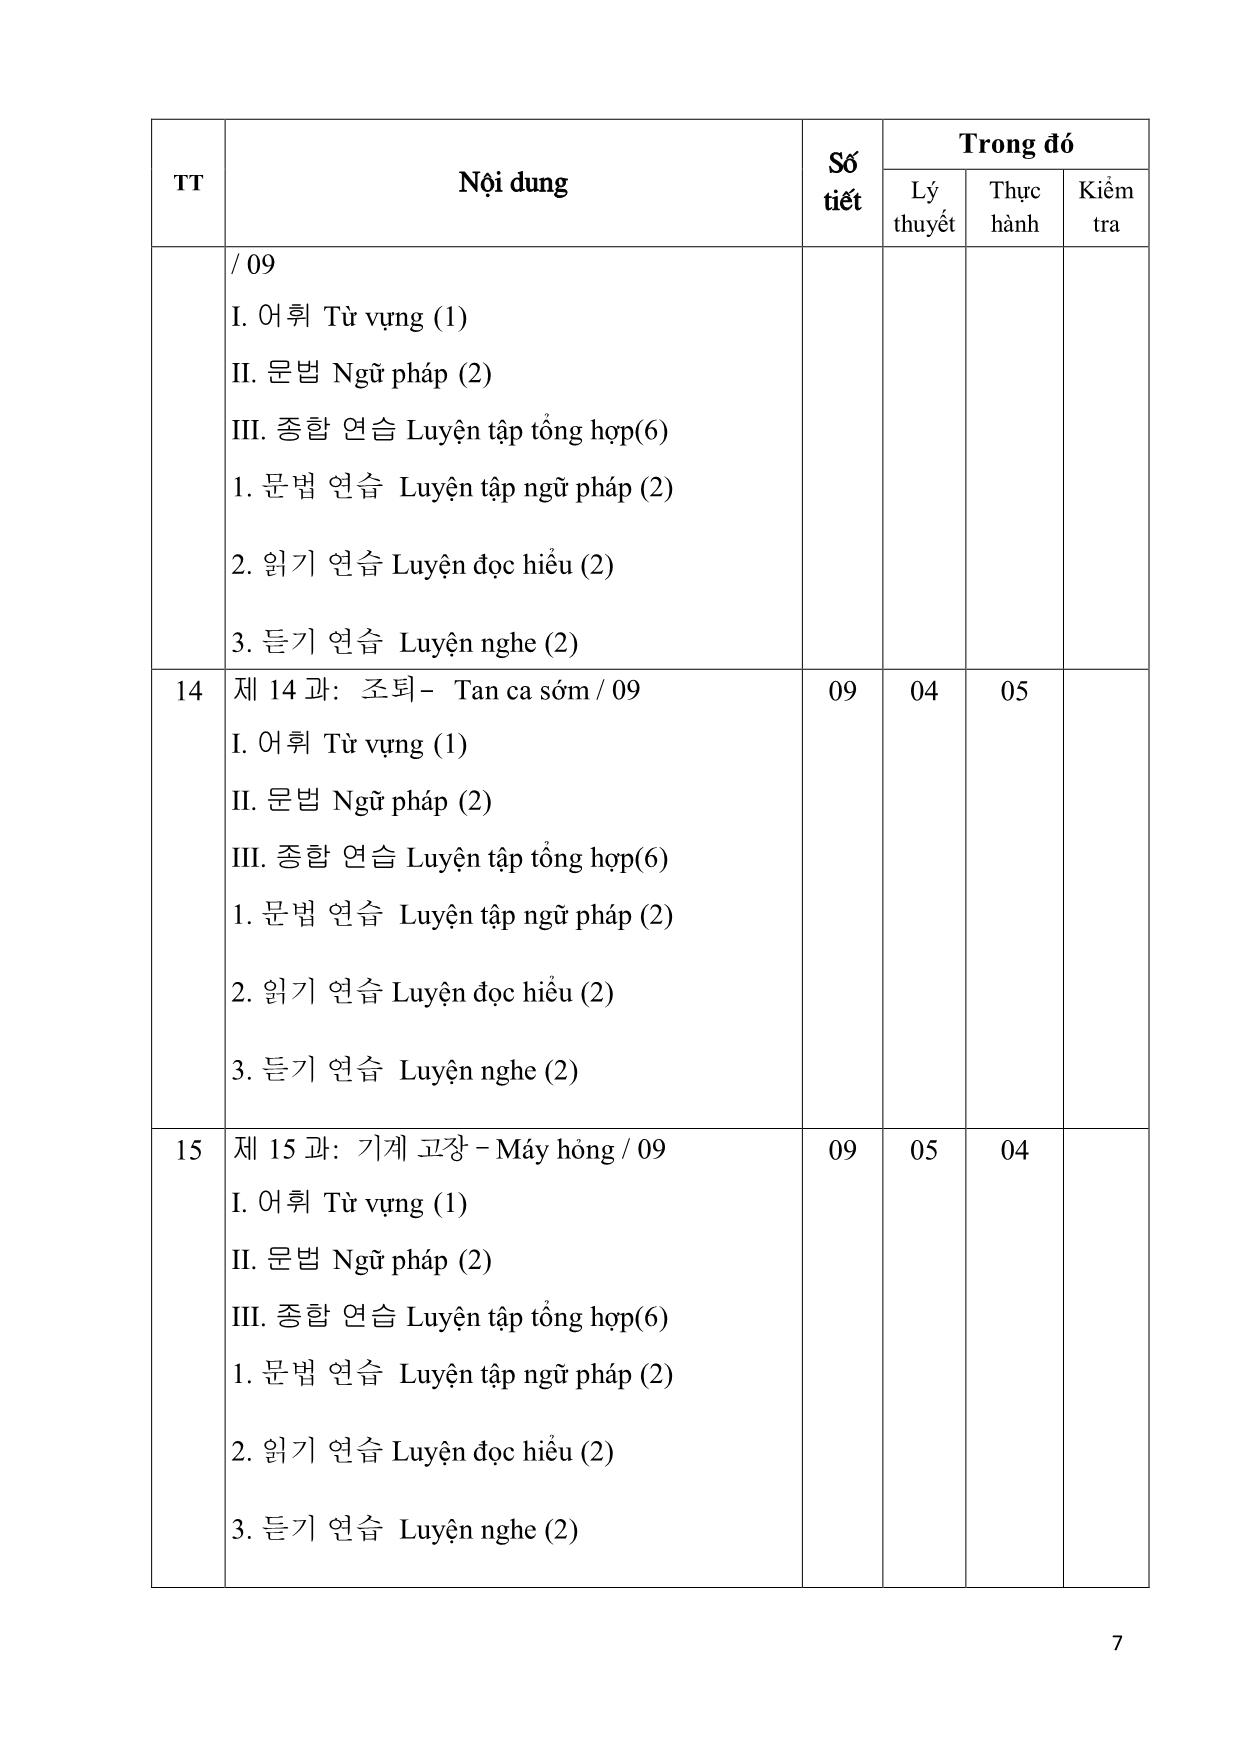 Giáo trình Chương trình tiếng Hàn dùng trong sản xuất chế tạo trang 7